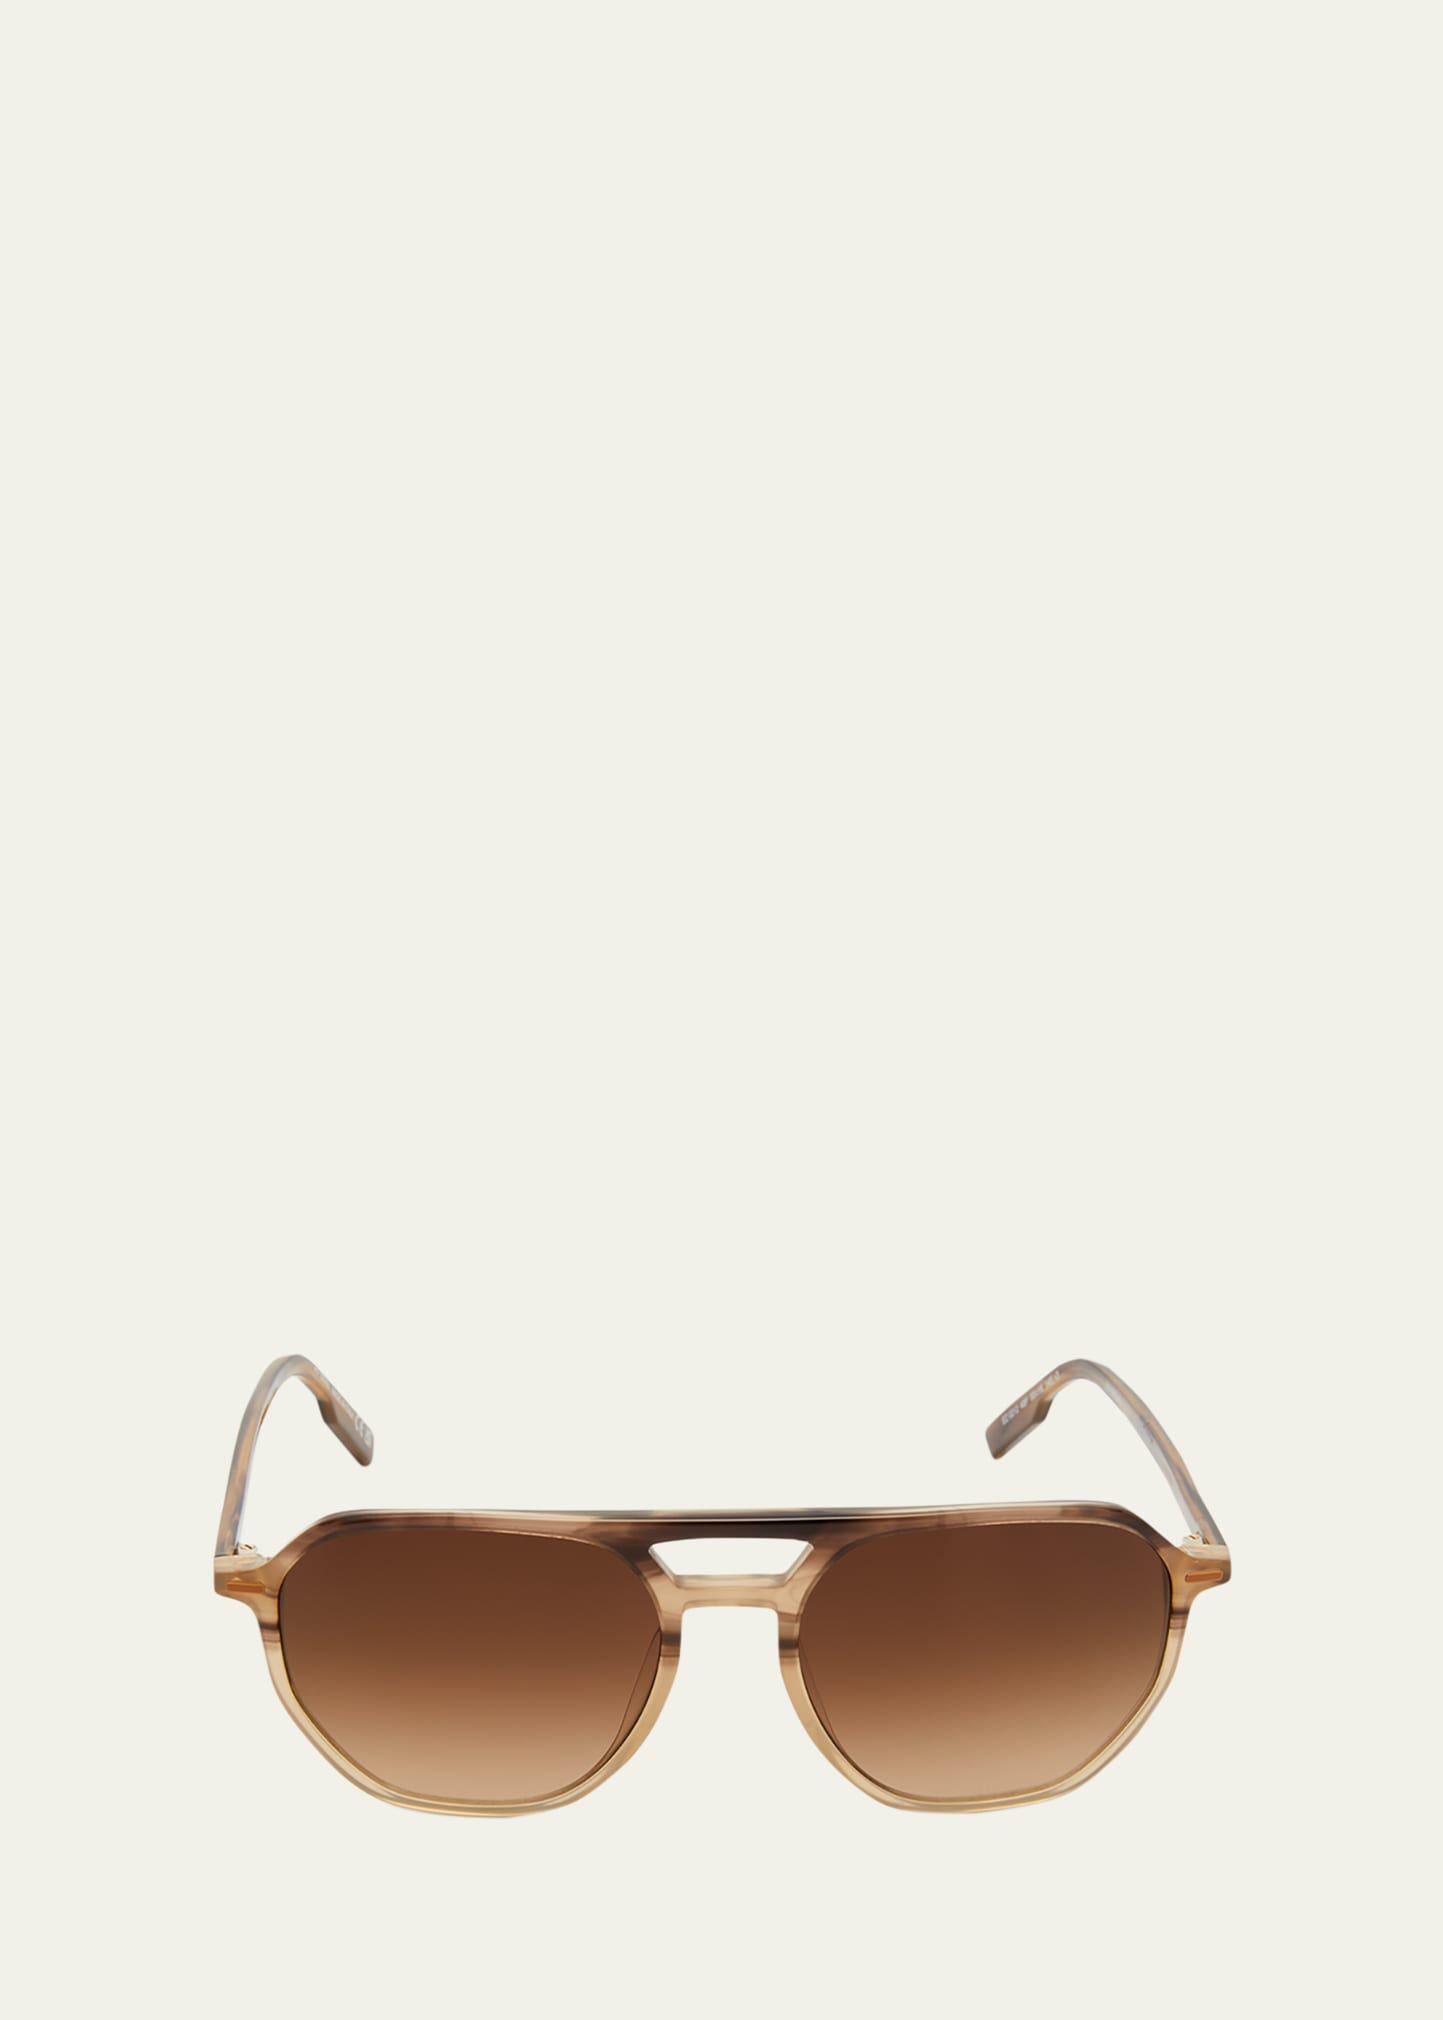 Zegna 55mm Aviator Sunglasses In Striped Brown